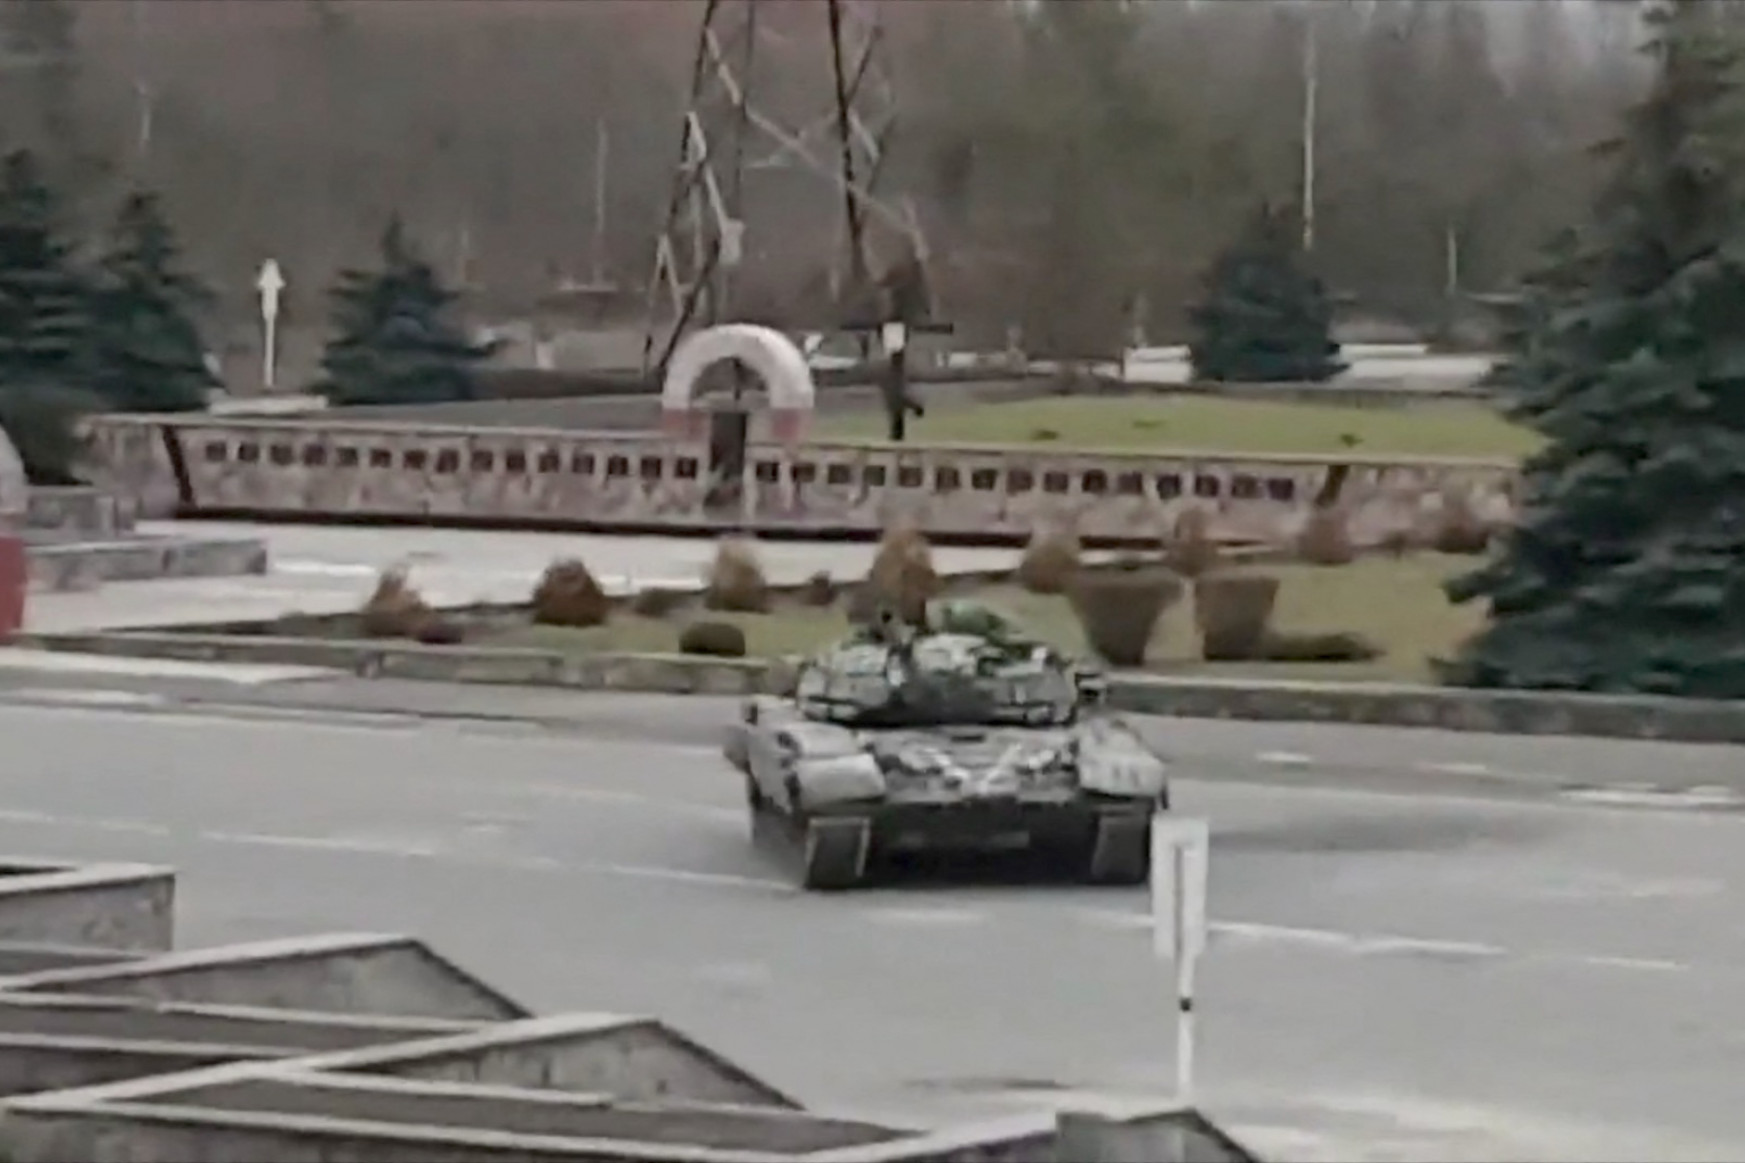 Fact-check: Nem kell pánikolni Csernobil miatt, csak felverték a tankok a radioaktív port